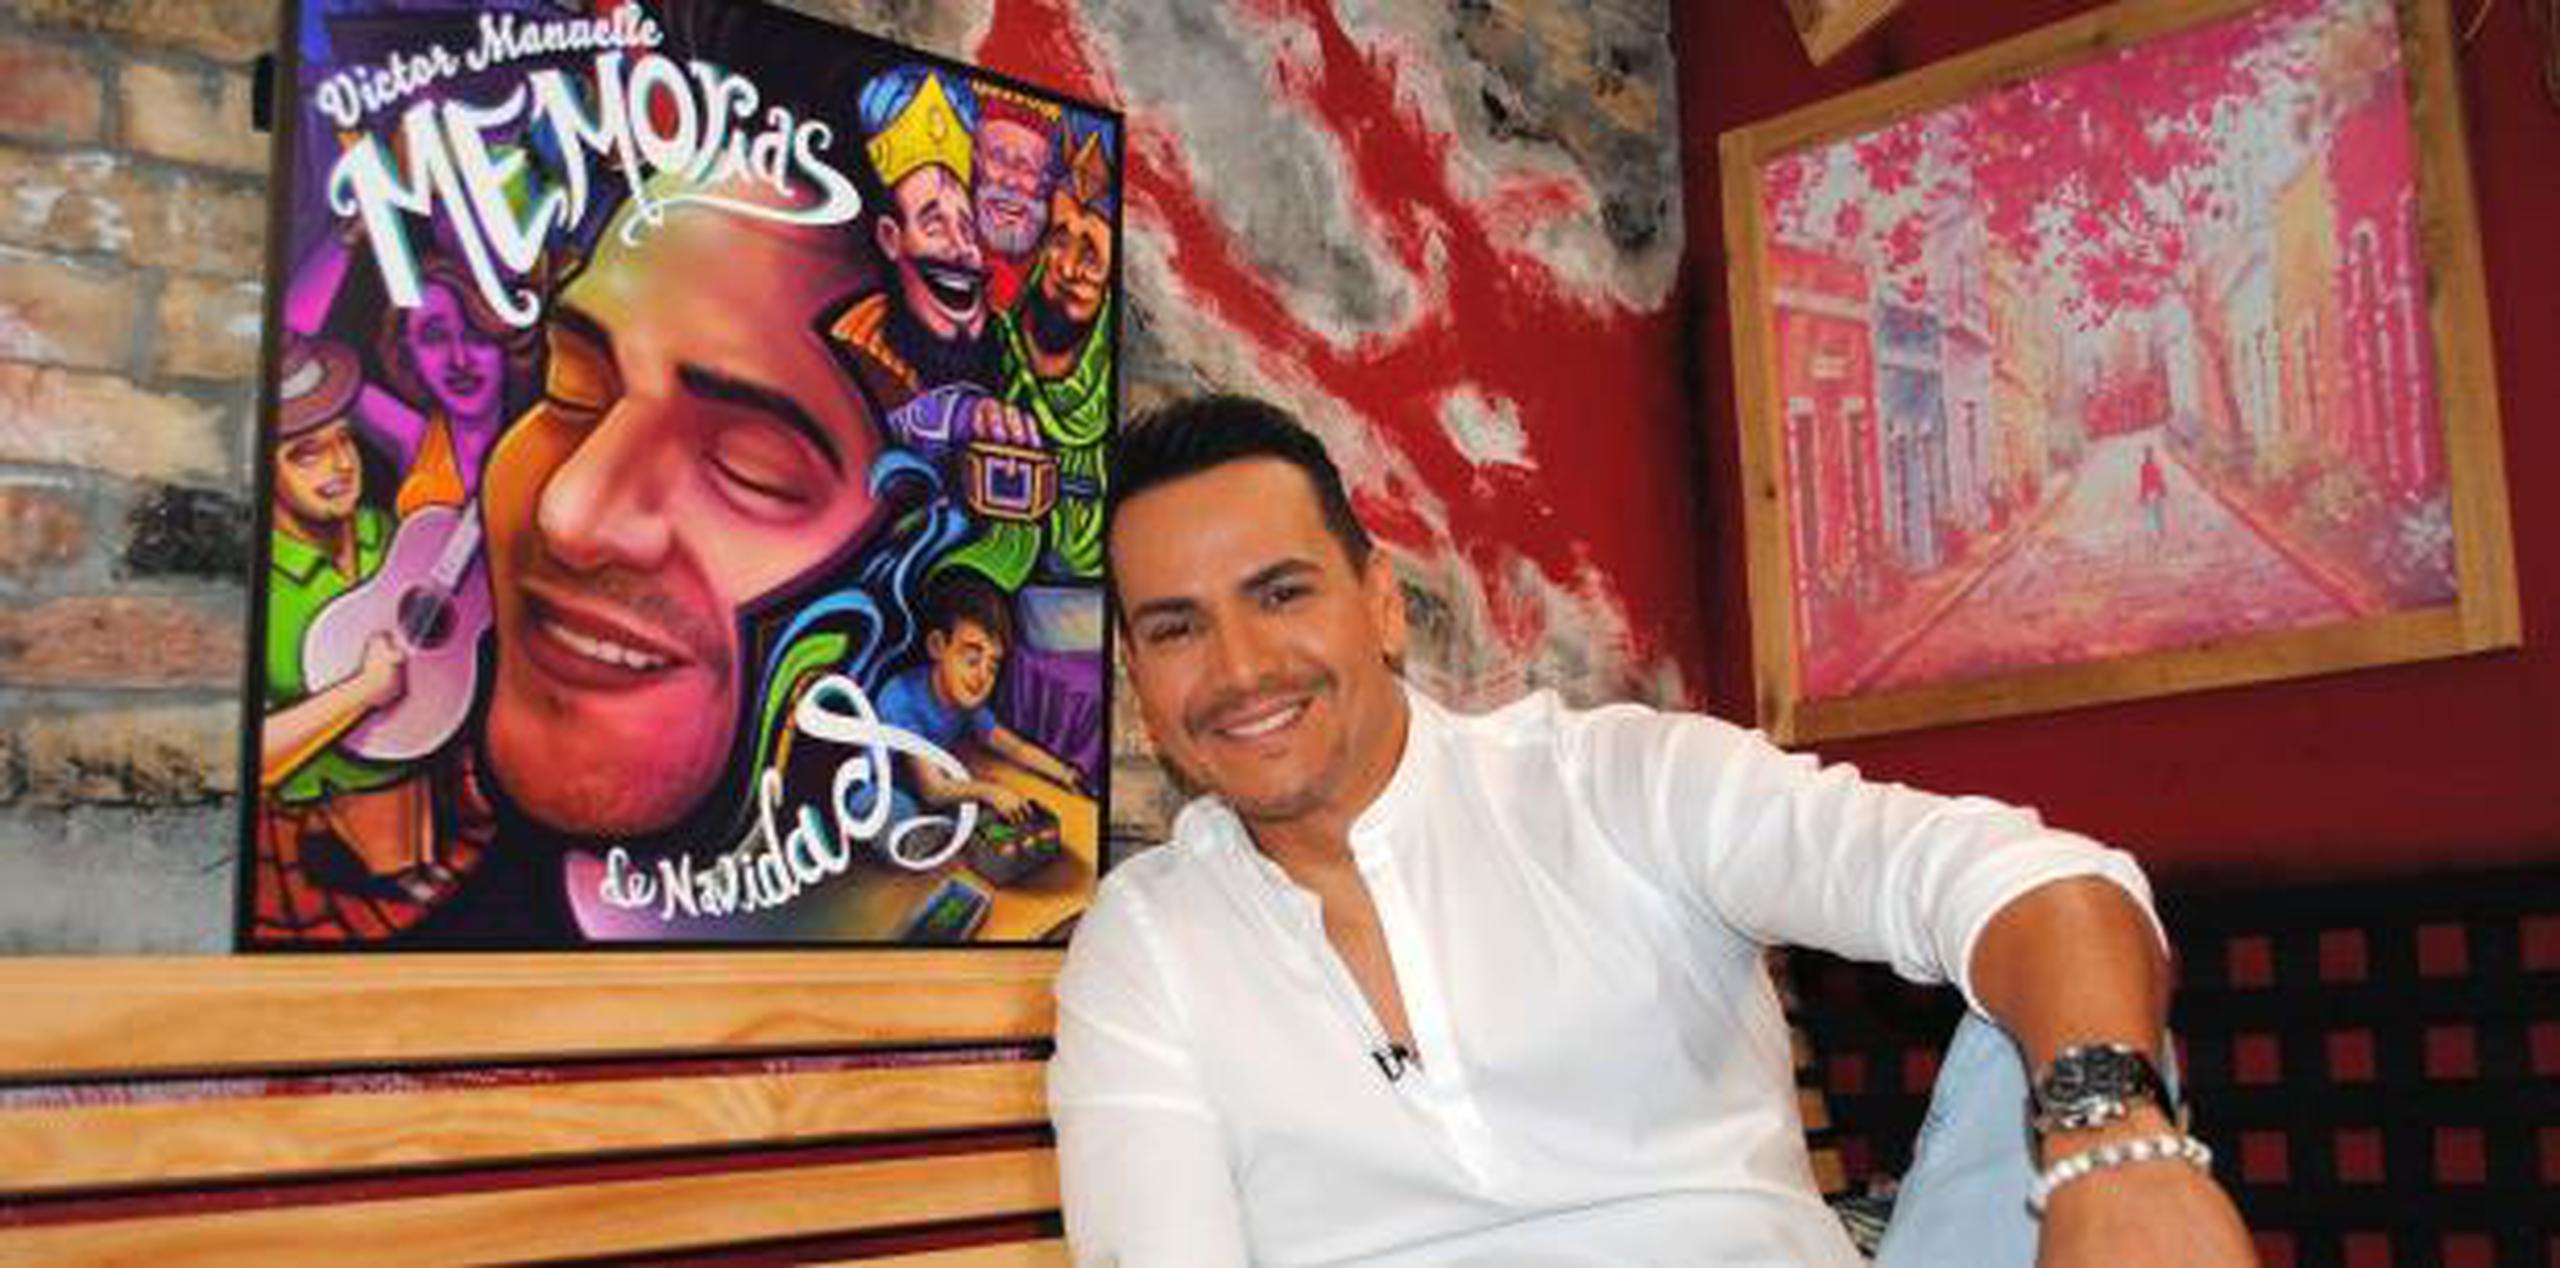 El cantante explicó que este es un disco que habla del apego de los puertorriqueños, como otros latinos, a las tradiciones. (EFE)